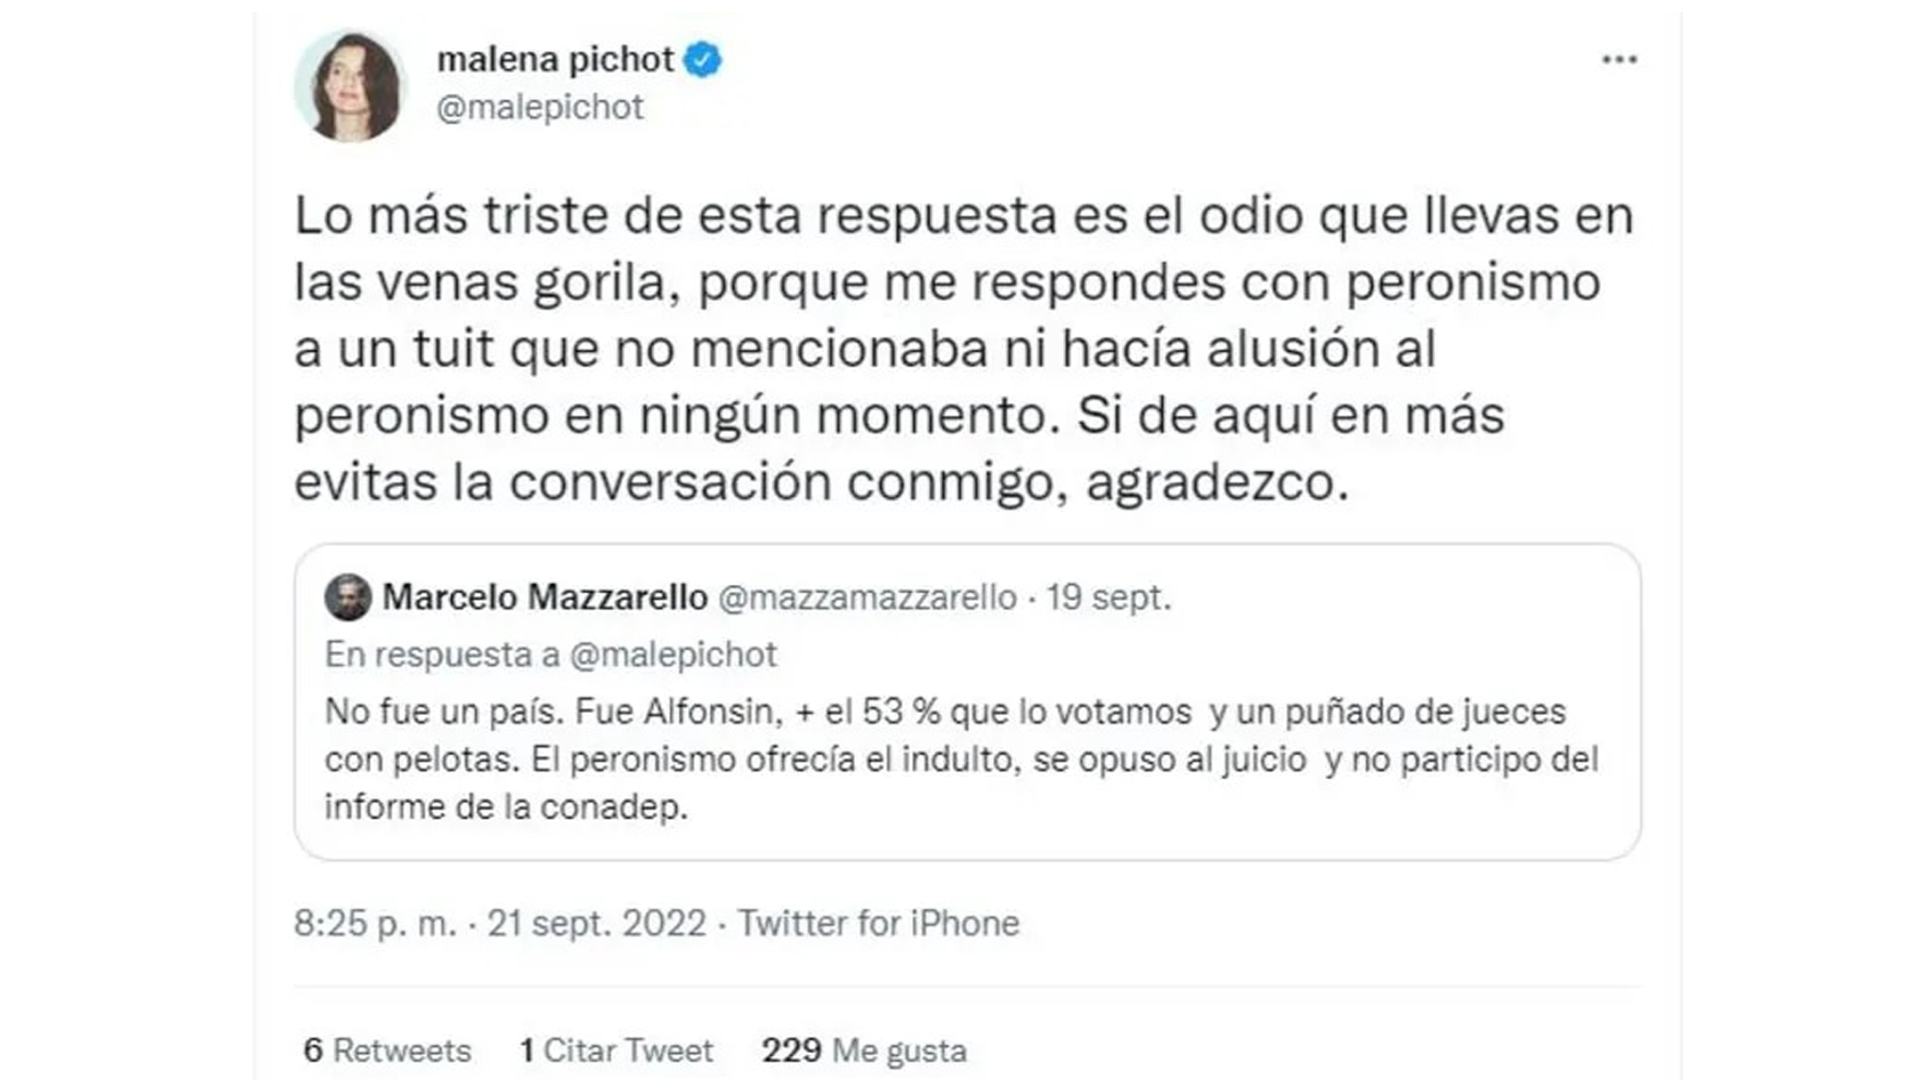 "Llevás odio en tus venas", aseguró Malena Pichot con una mención directa a Marcelo Mazzarello